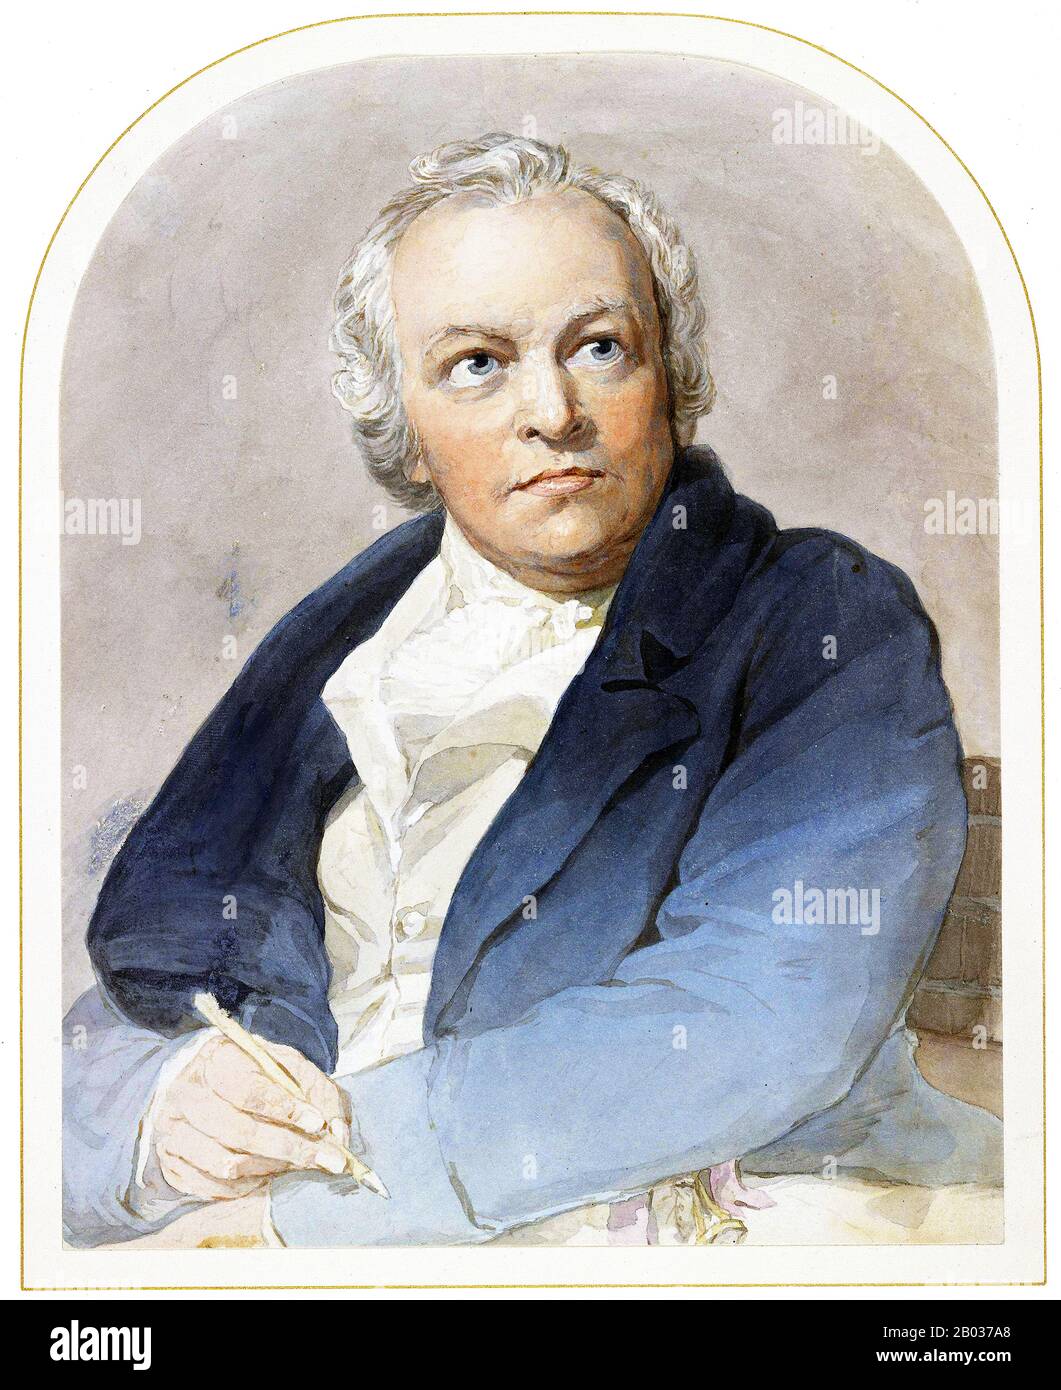 William Blake (28 novembre 1757 – 12 août 1827) était poète, peintre et créateur d'impression anglais. Largement méconnu pendant sa vie, Blake est maintenant considéré comme une figure séminale dans l'histoire de la poésie et des arts visuels de l'âge romantique. Ses oeuvres prophétiques ont été dites pour former "ce qui est en proportion de ses mérites le corps le moins lu de poésie en langue anglaise". Son art visuel a conduit un critique d'art contemporain à le proclamer "loin et loin le plus grand artiste que la Grande-Bretagne ait jamais produit". Banque D'Images